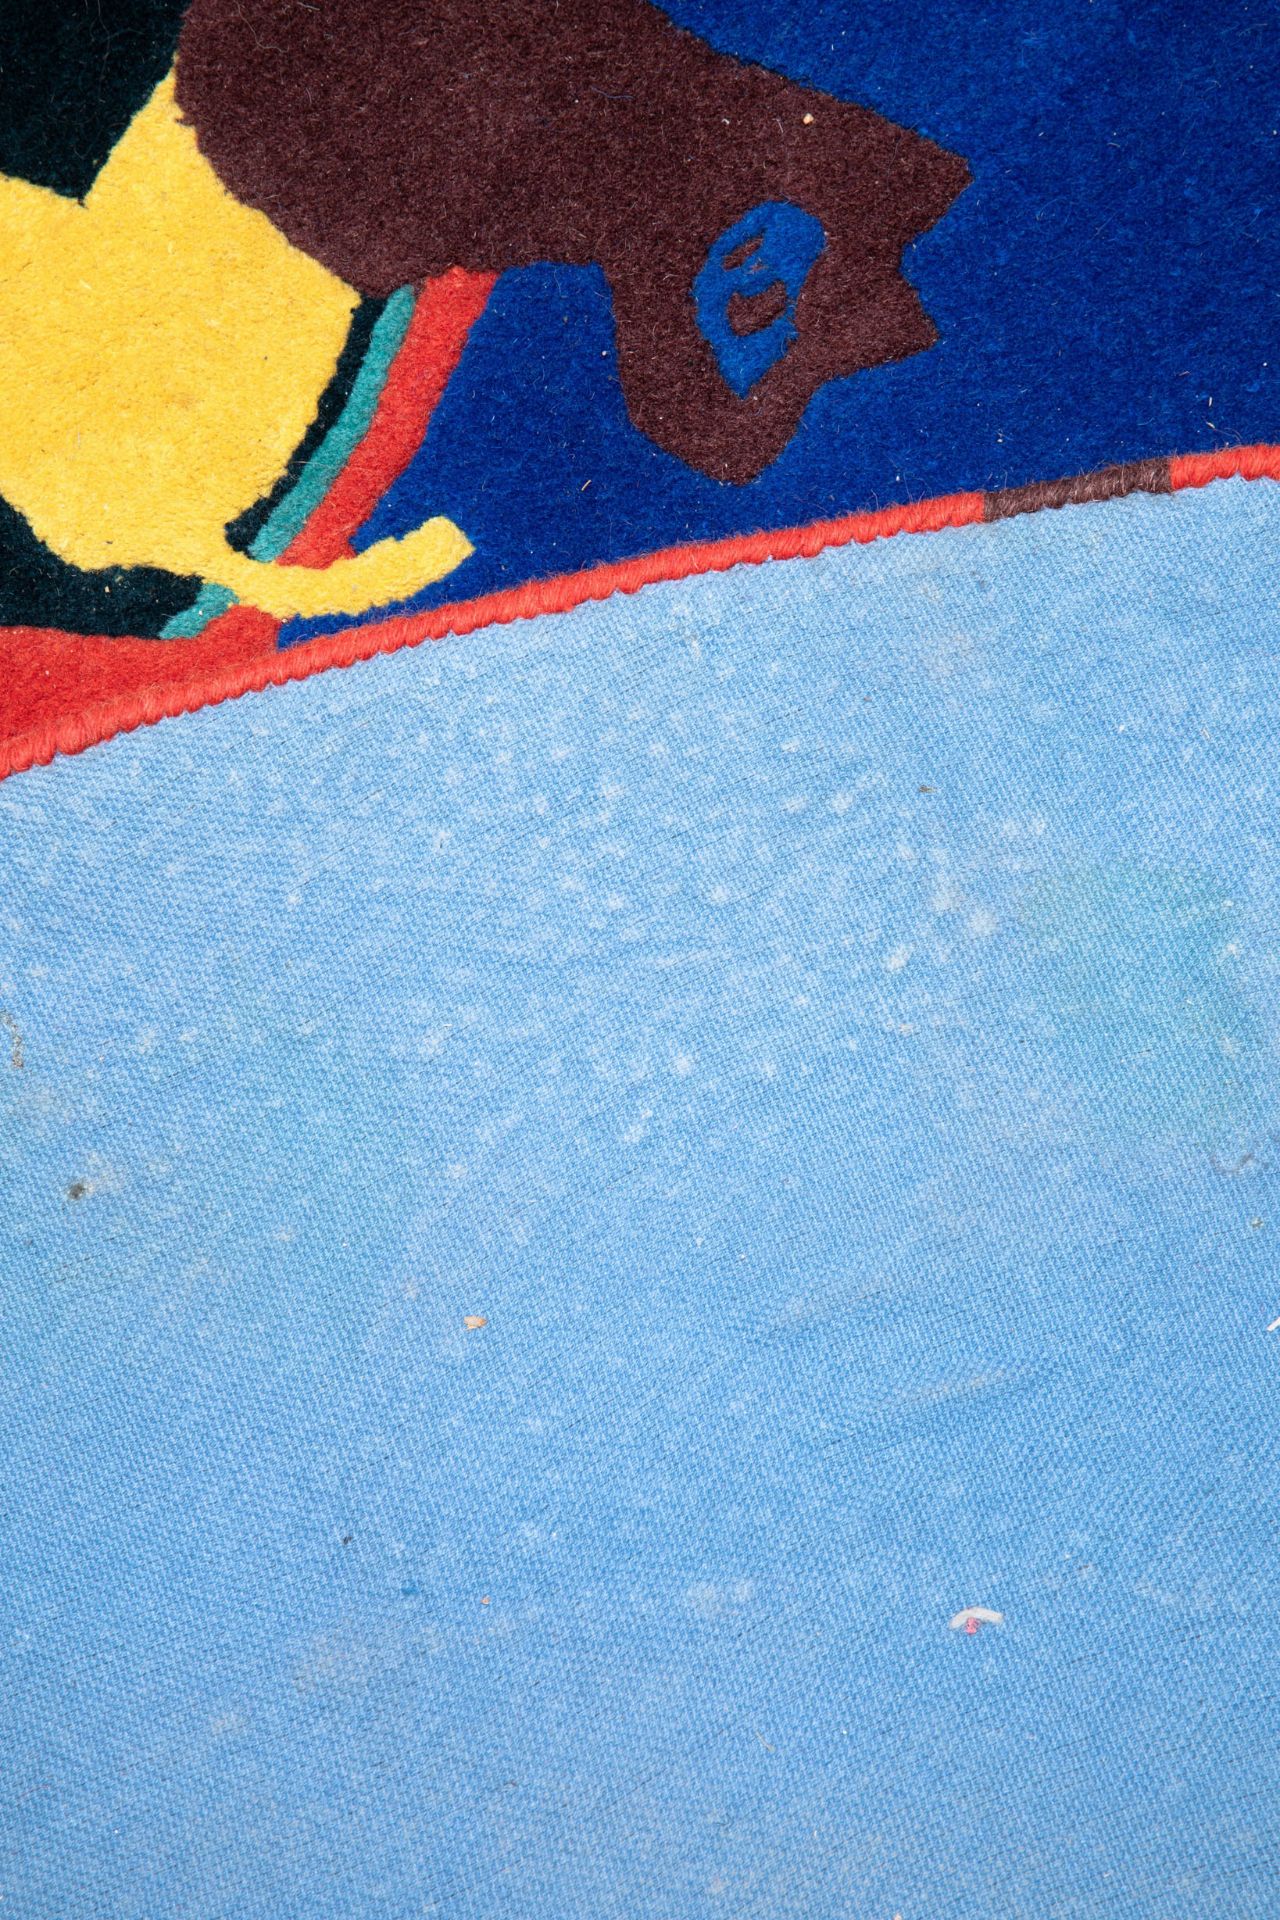 Corneille*, Art Carpet 'Elégie d'un été' - Bild 4 aus 4